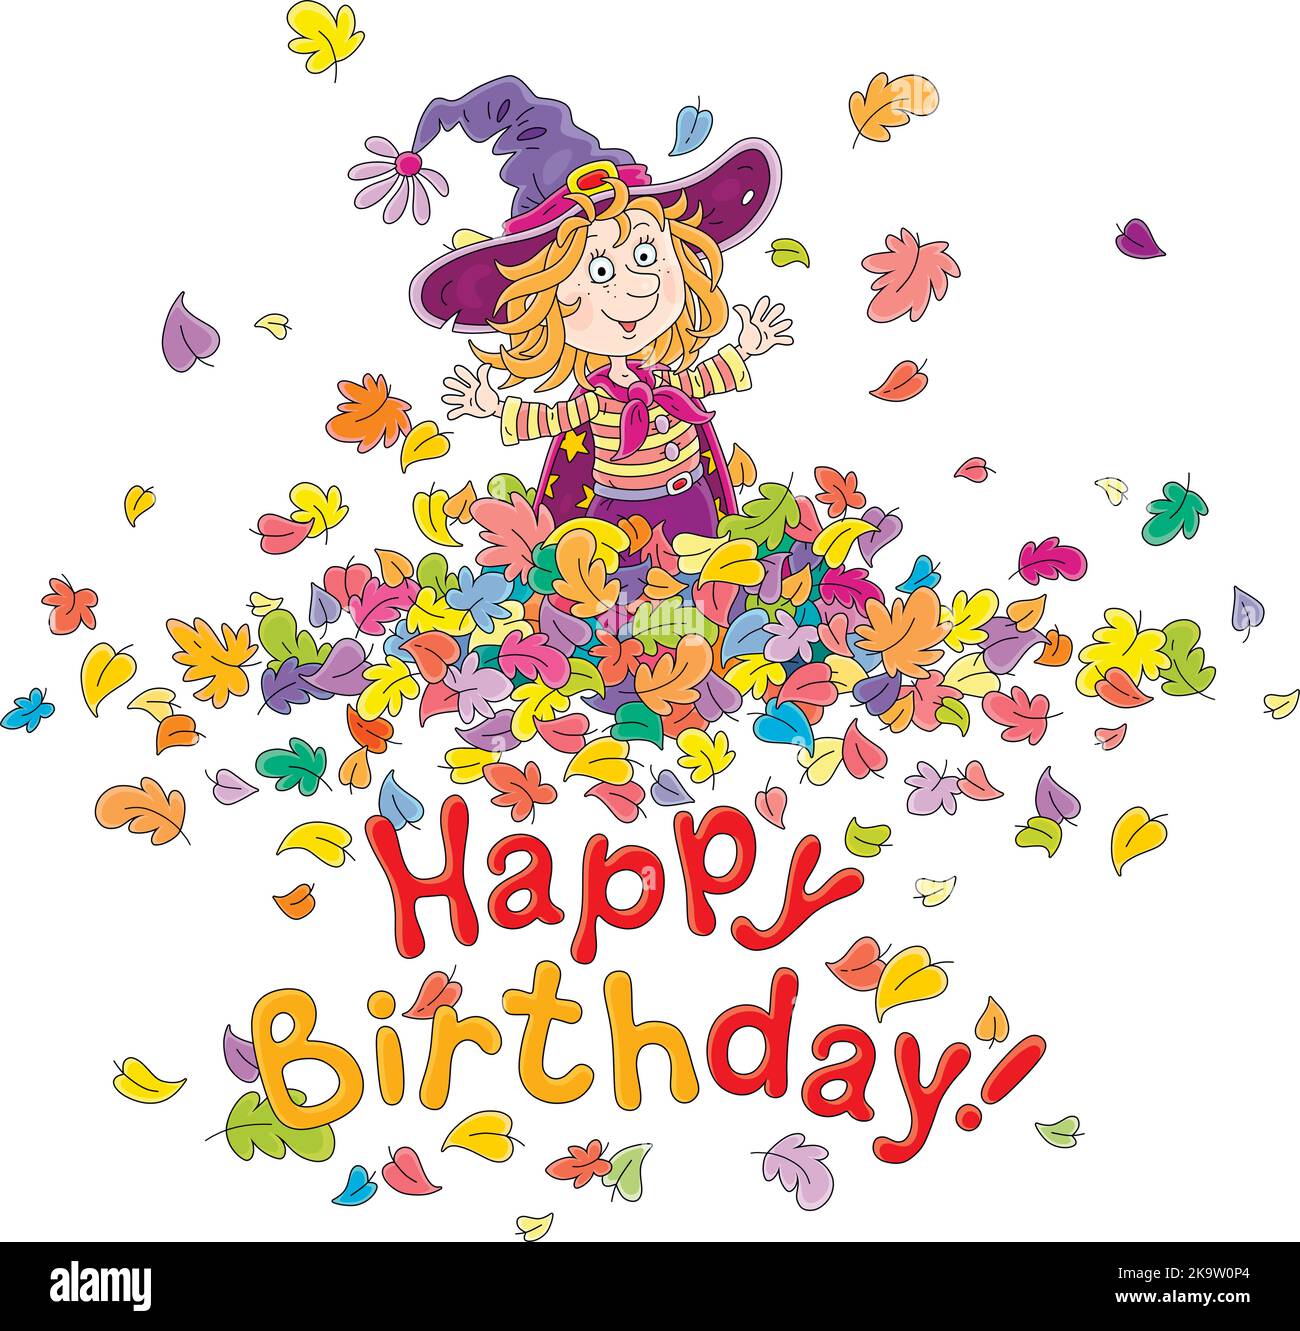 Happy Birthday Karte mit einer lustigen kleinen Hexe, die mit fliegenden und wirbelnden bunten Blättern spielt Stock Vektor